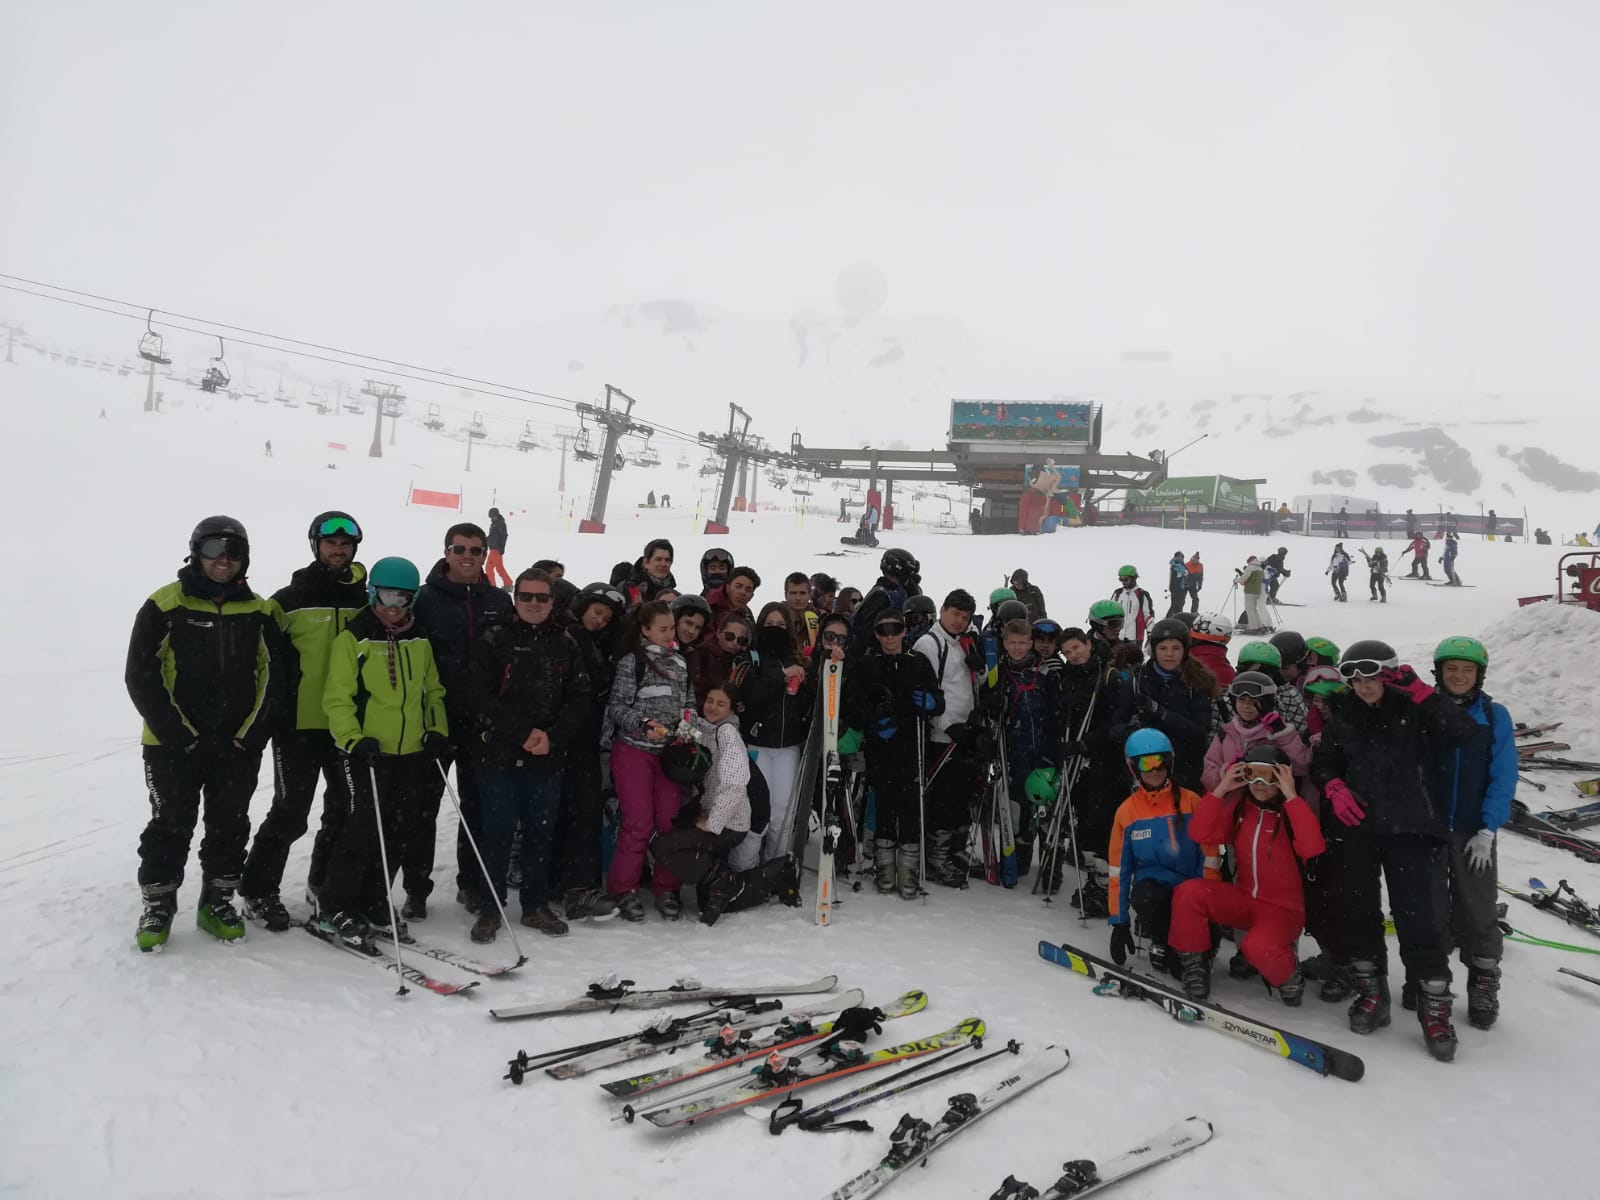 Los vecinos de Monachil podrán aprender a esquiar gracias a un programa municipal